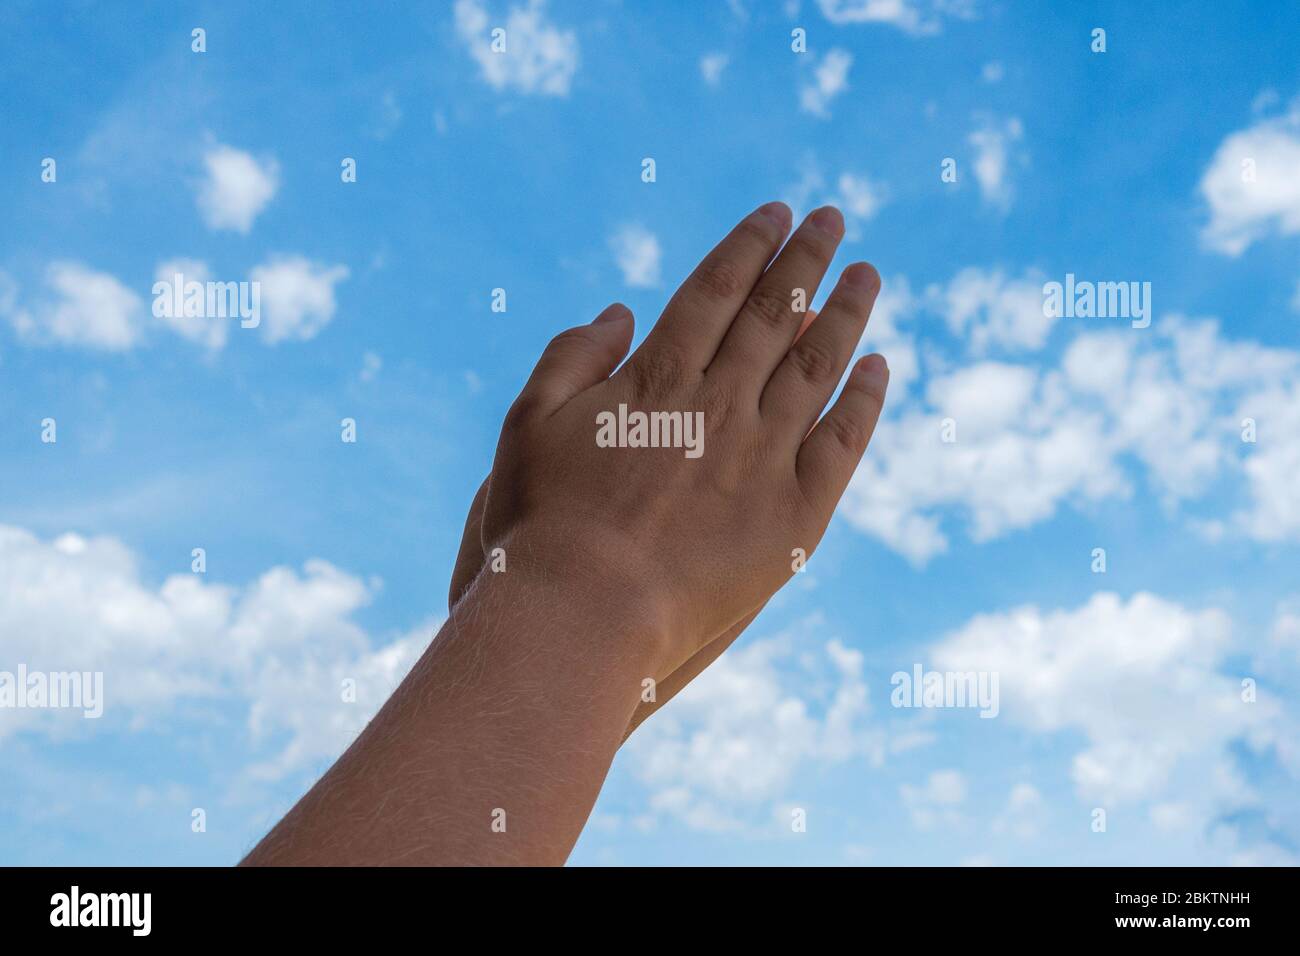 Beifall. Kid Hände applaudieren über blauen Himmel Hintergrund. Ansicht mit niedrigem Winkel Stockfoto